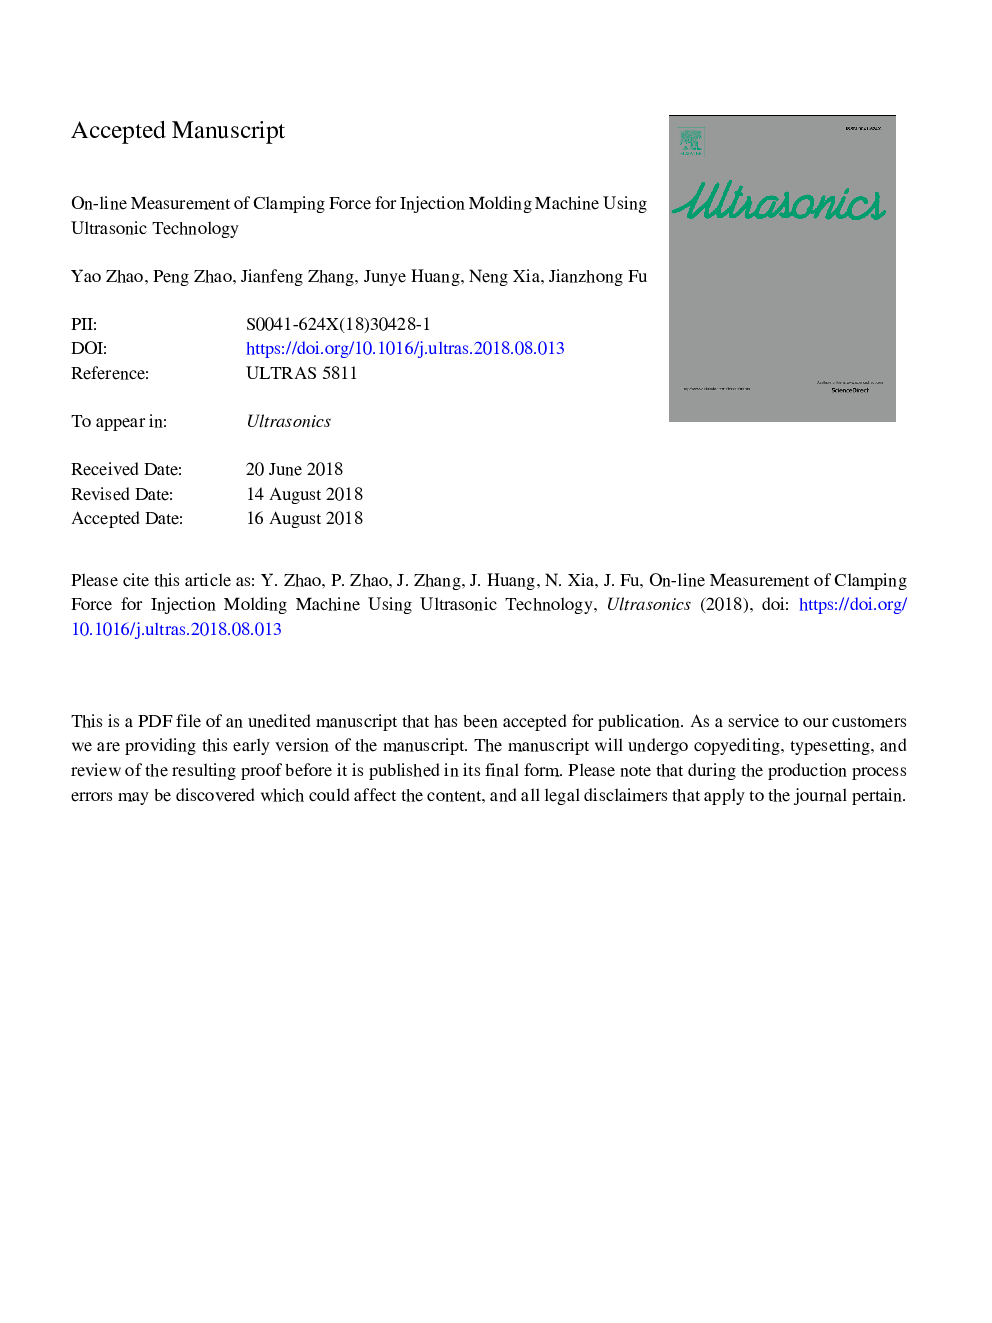 اندازه گیری بر روی خط نیروی بستگی برای دستگاه قالب گیری تزریقی با استفاده از تکنولوژی اولتراسونیک